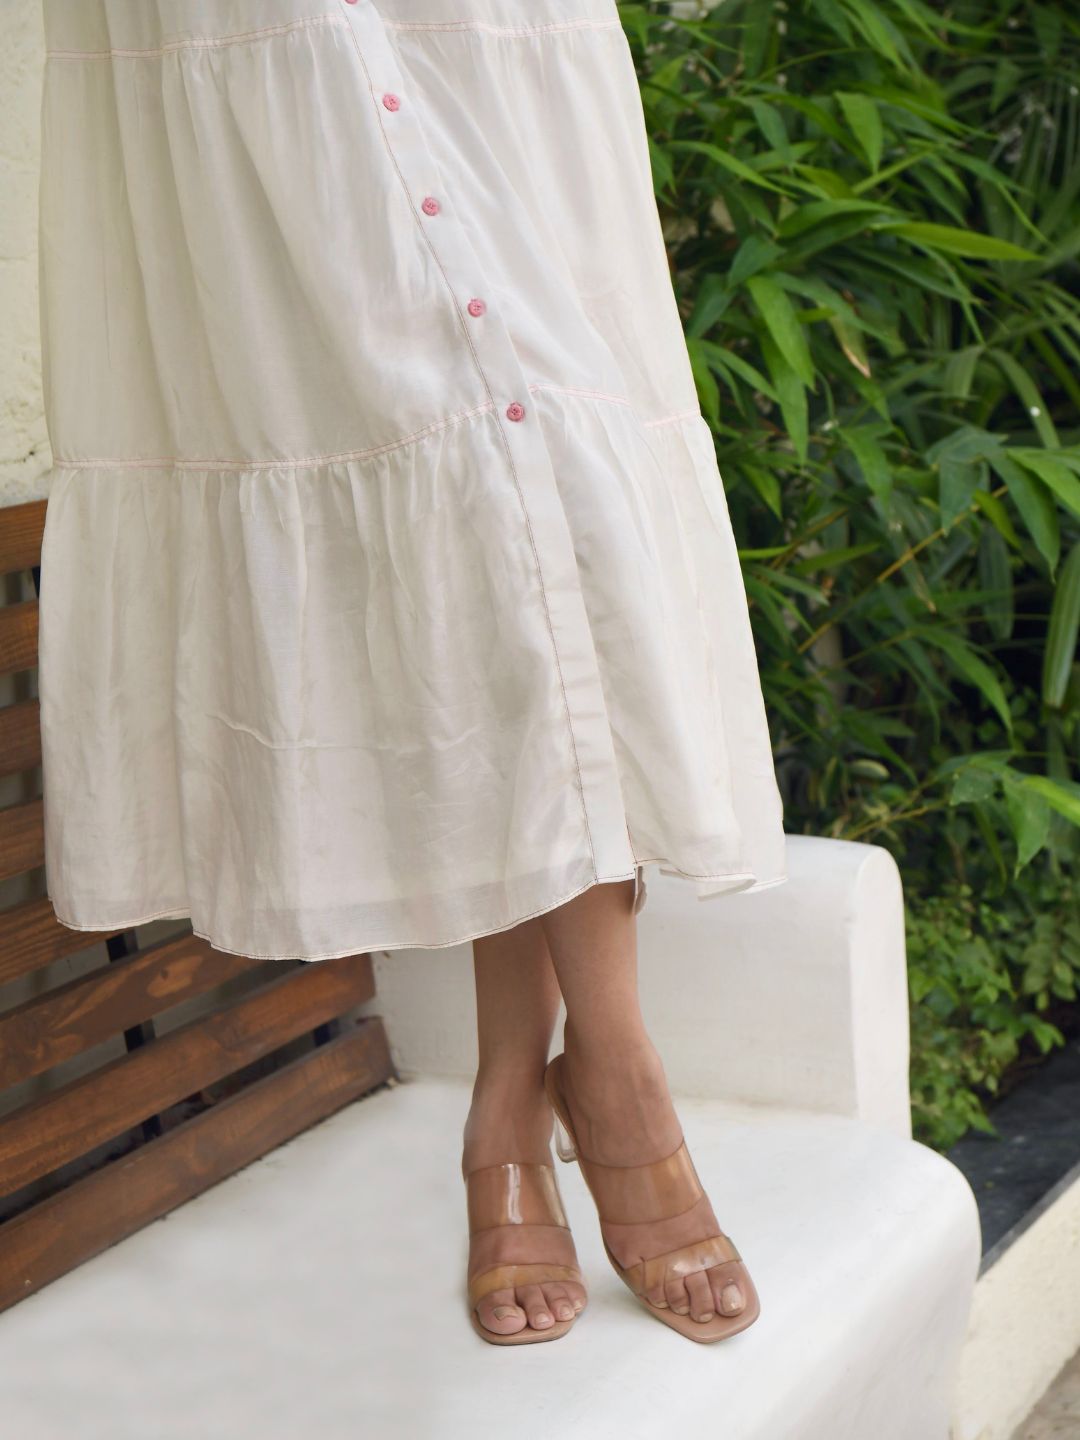 Floral-Garden-White-Silky-Dreamy-Summer-Dress